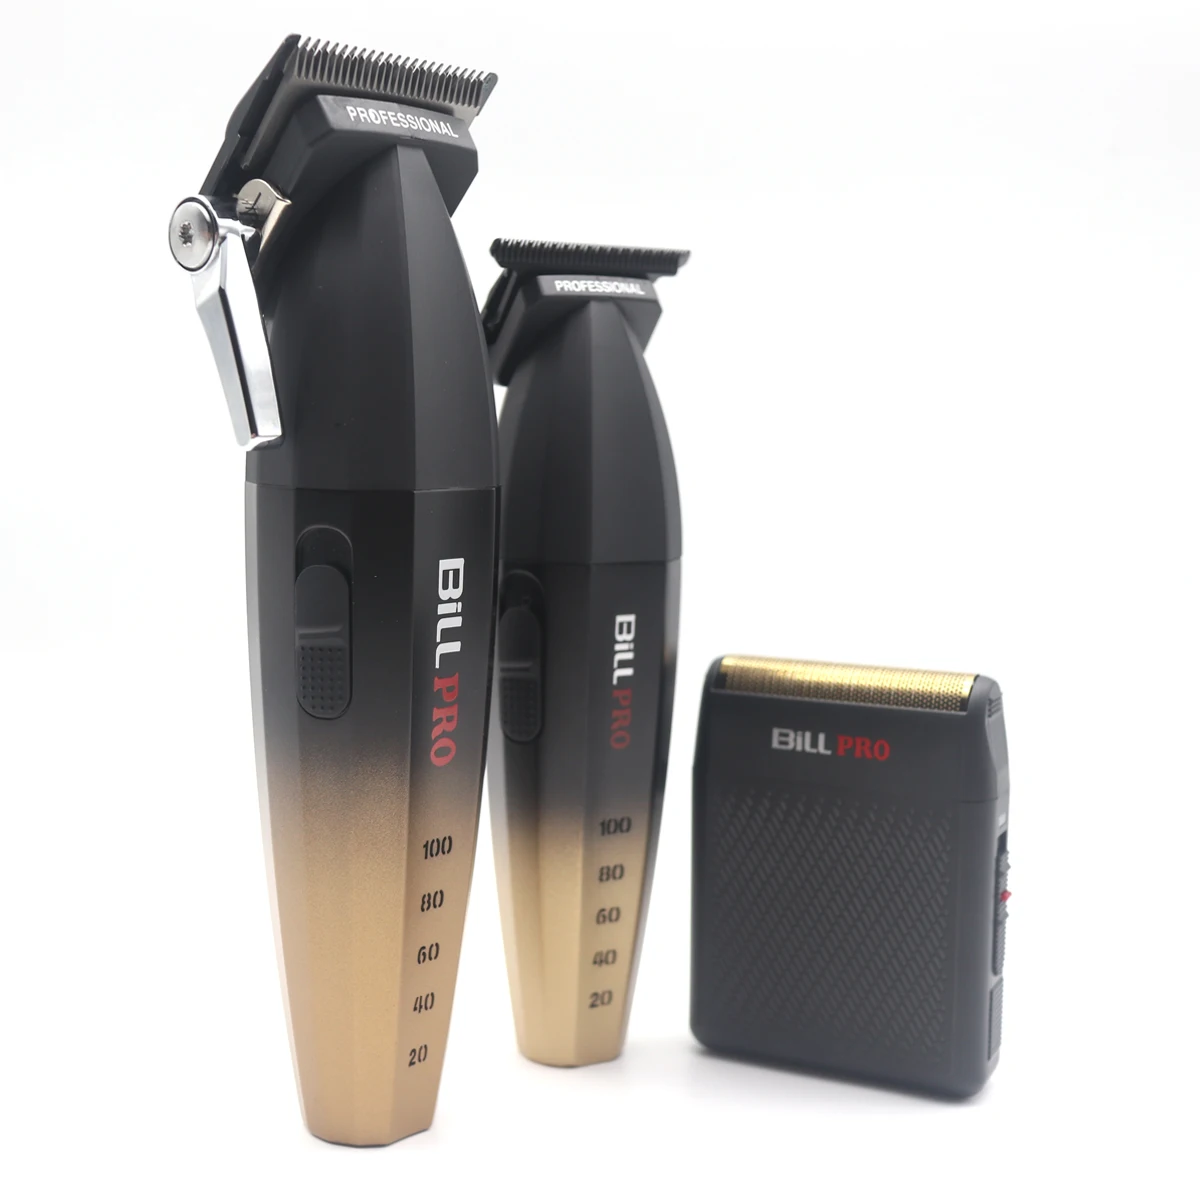 Набор профессиональных станков для резки Bill Pro DLC Blade 9000 об/мин фольгированная бритва парикмахерская профессиональная машинка для стрижки волос.0